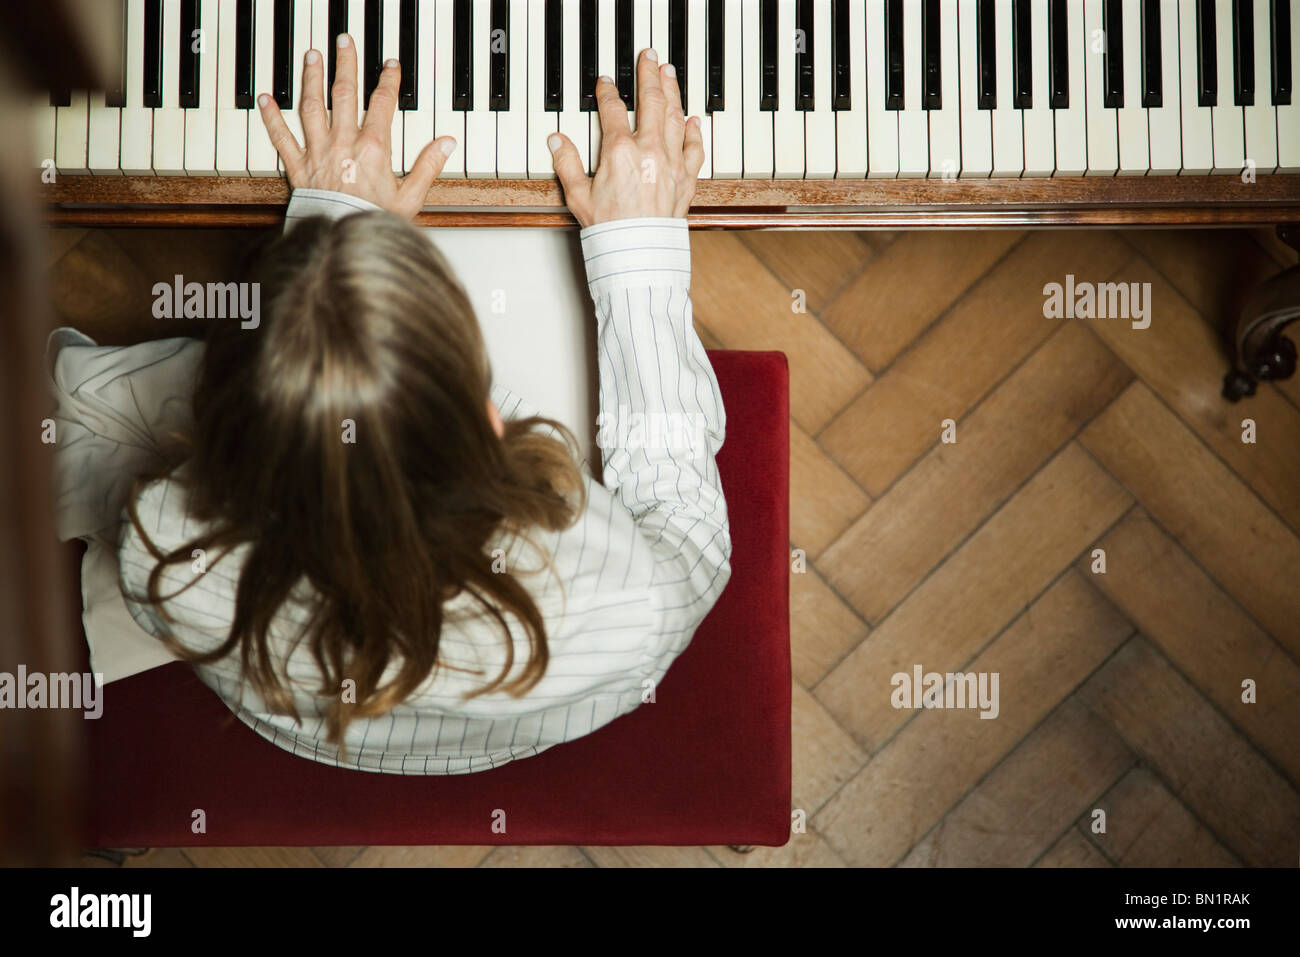 Woman playing piano Stock Photo